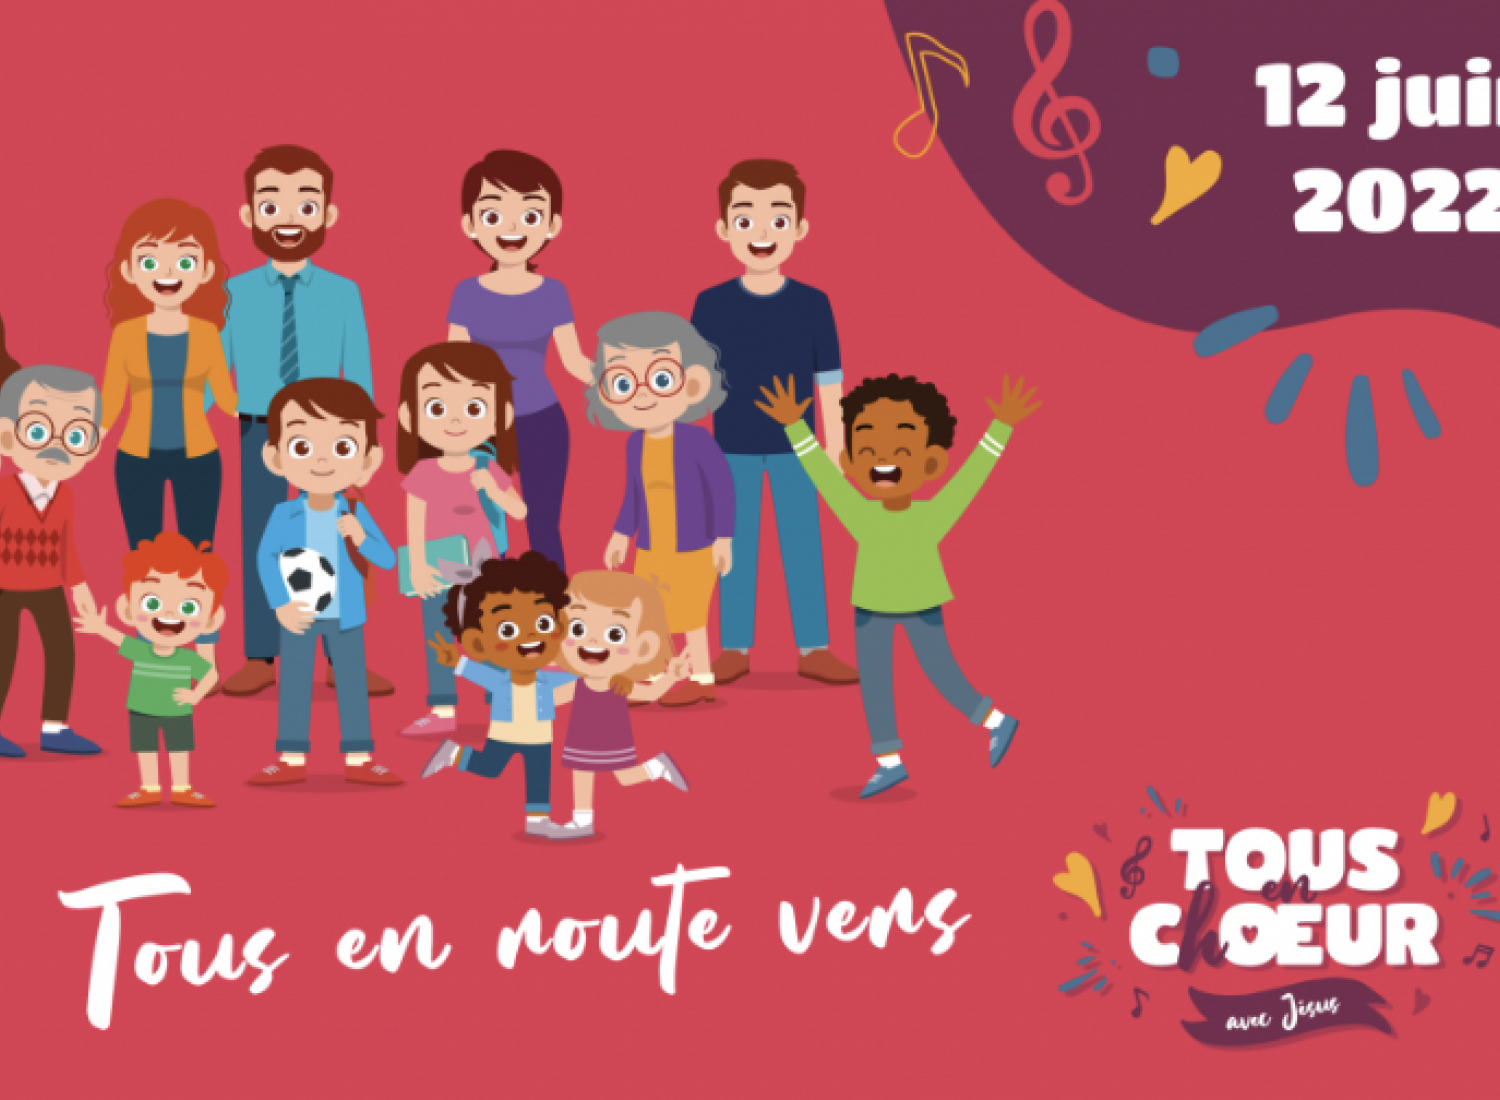 Affiche annonçant l'événement « Tous en Choeur » du 12 juin 2022